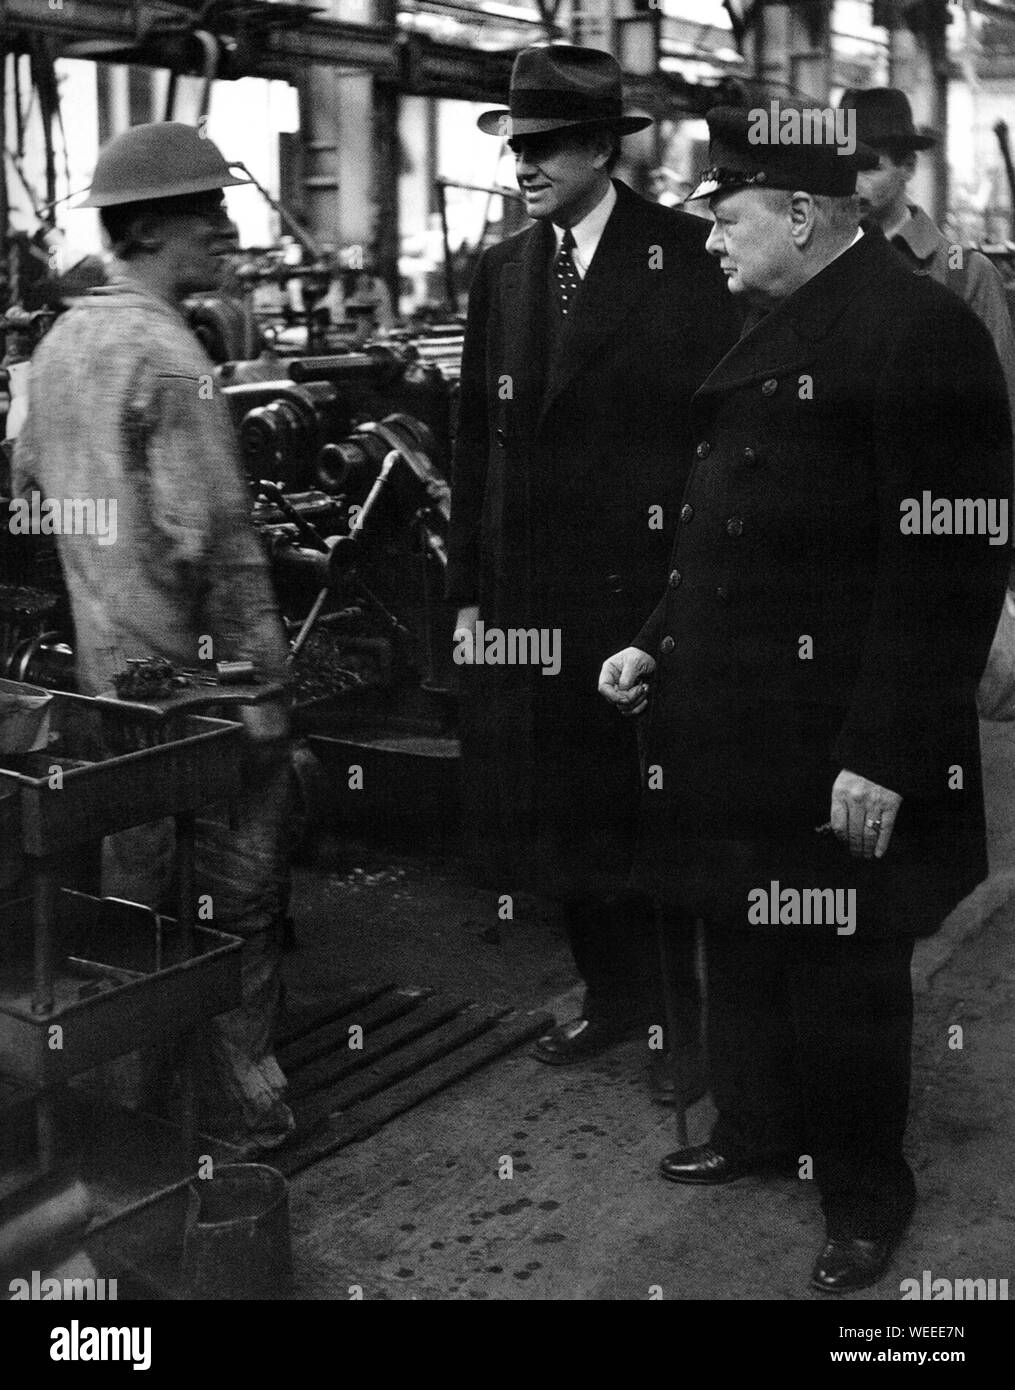 Winston Churchill en visite à Plymouth après des bombardements intensifs sur la ville, accompagné d'Averell Harriman, envoyé spécial des États-Unis, le 2 mai 1941 Banque D'Images